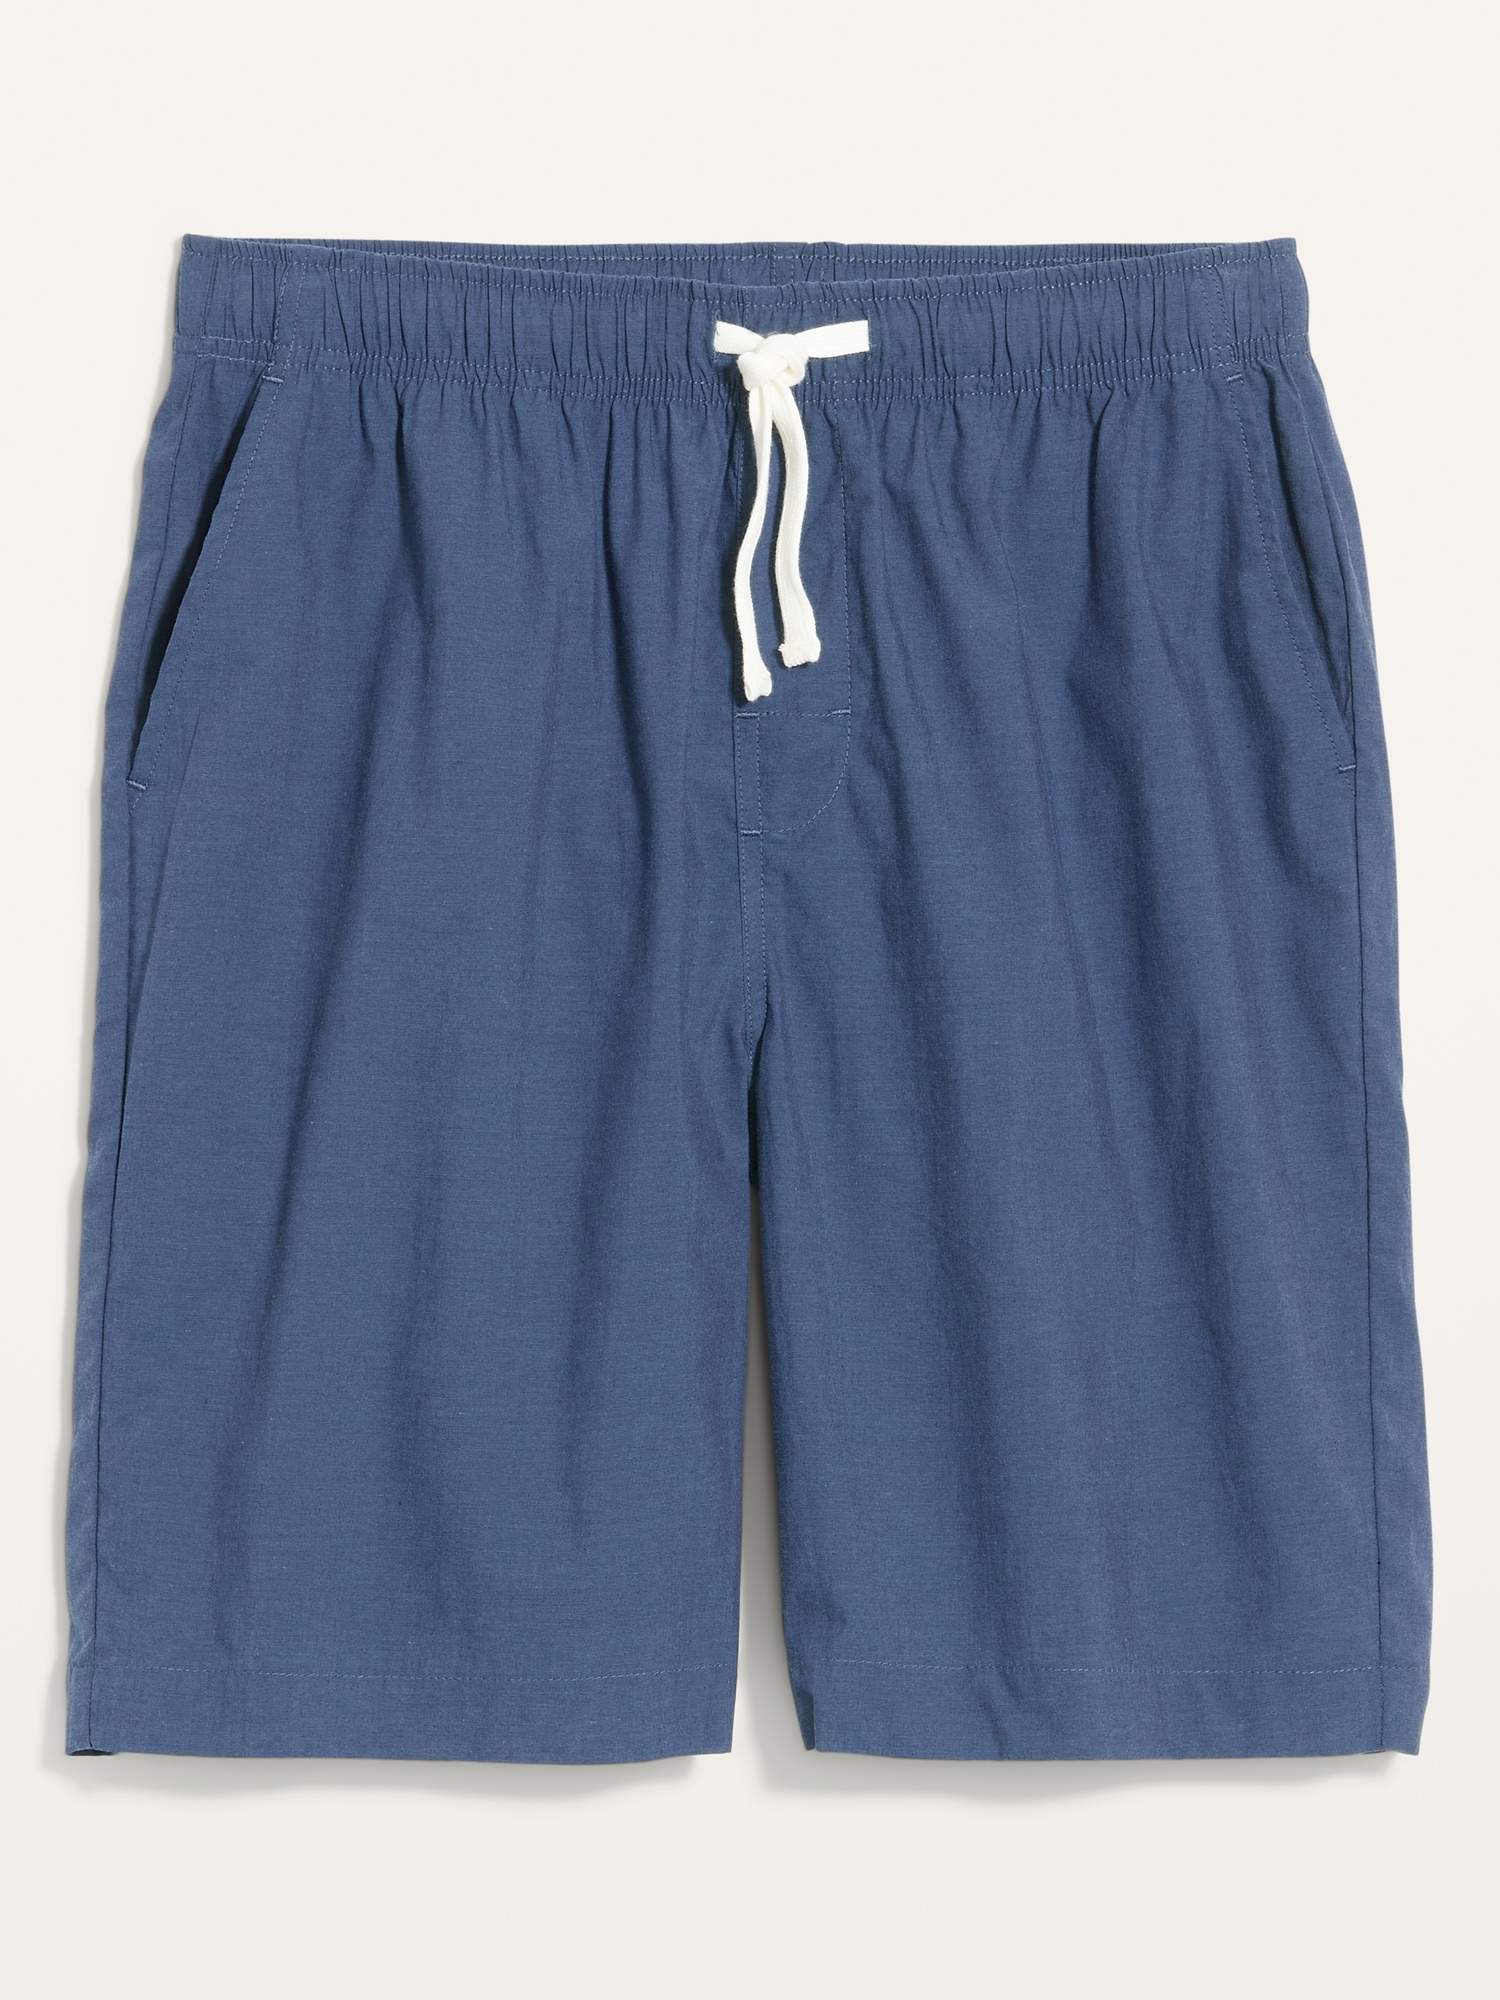 Poplin Pajama Shorts for Men--9-inch inseam | Old Navy